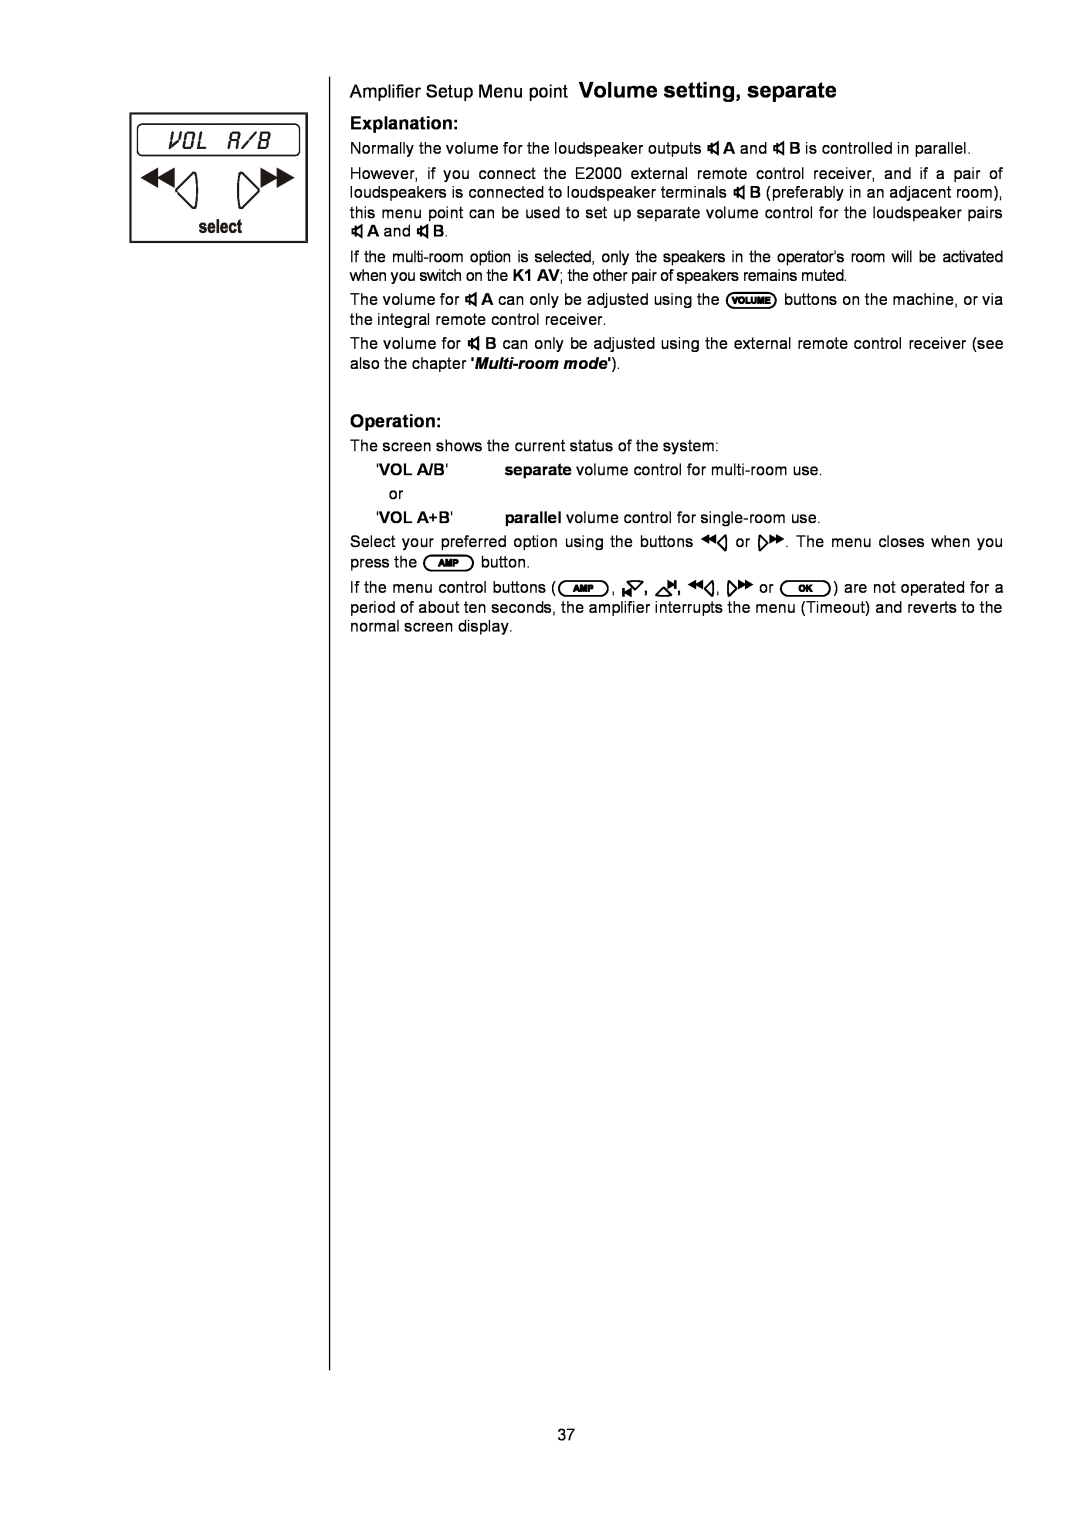 T+A Elektroakustik K1 AV user manual vol a/b, Explanation, Operation 